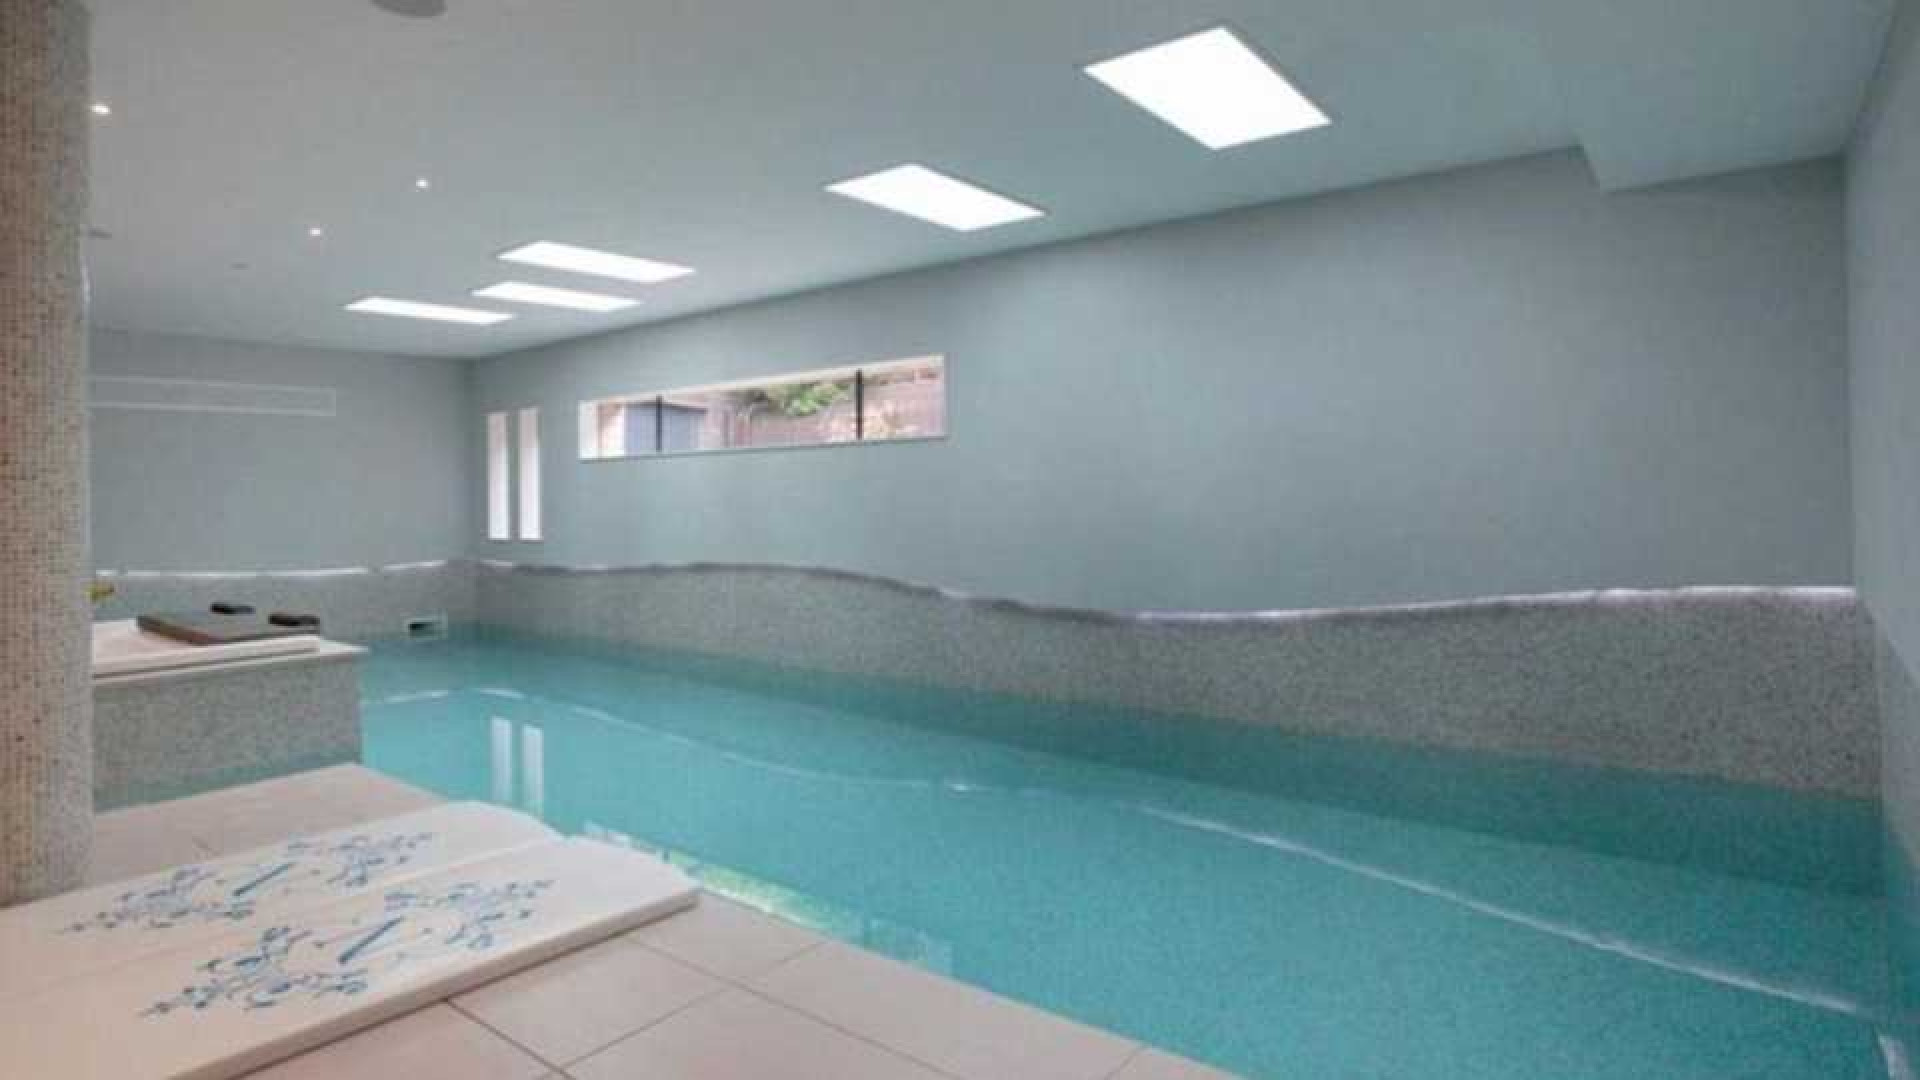 Memphis Depay huurt waanzinnig luxe villa in Manchester met eigen indoor voetbalveldje. Zie foto's